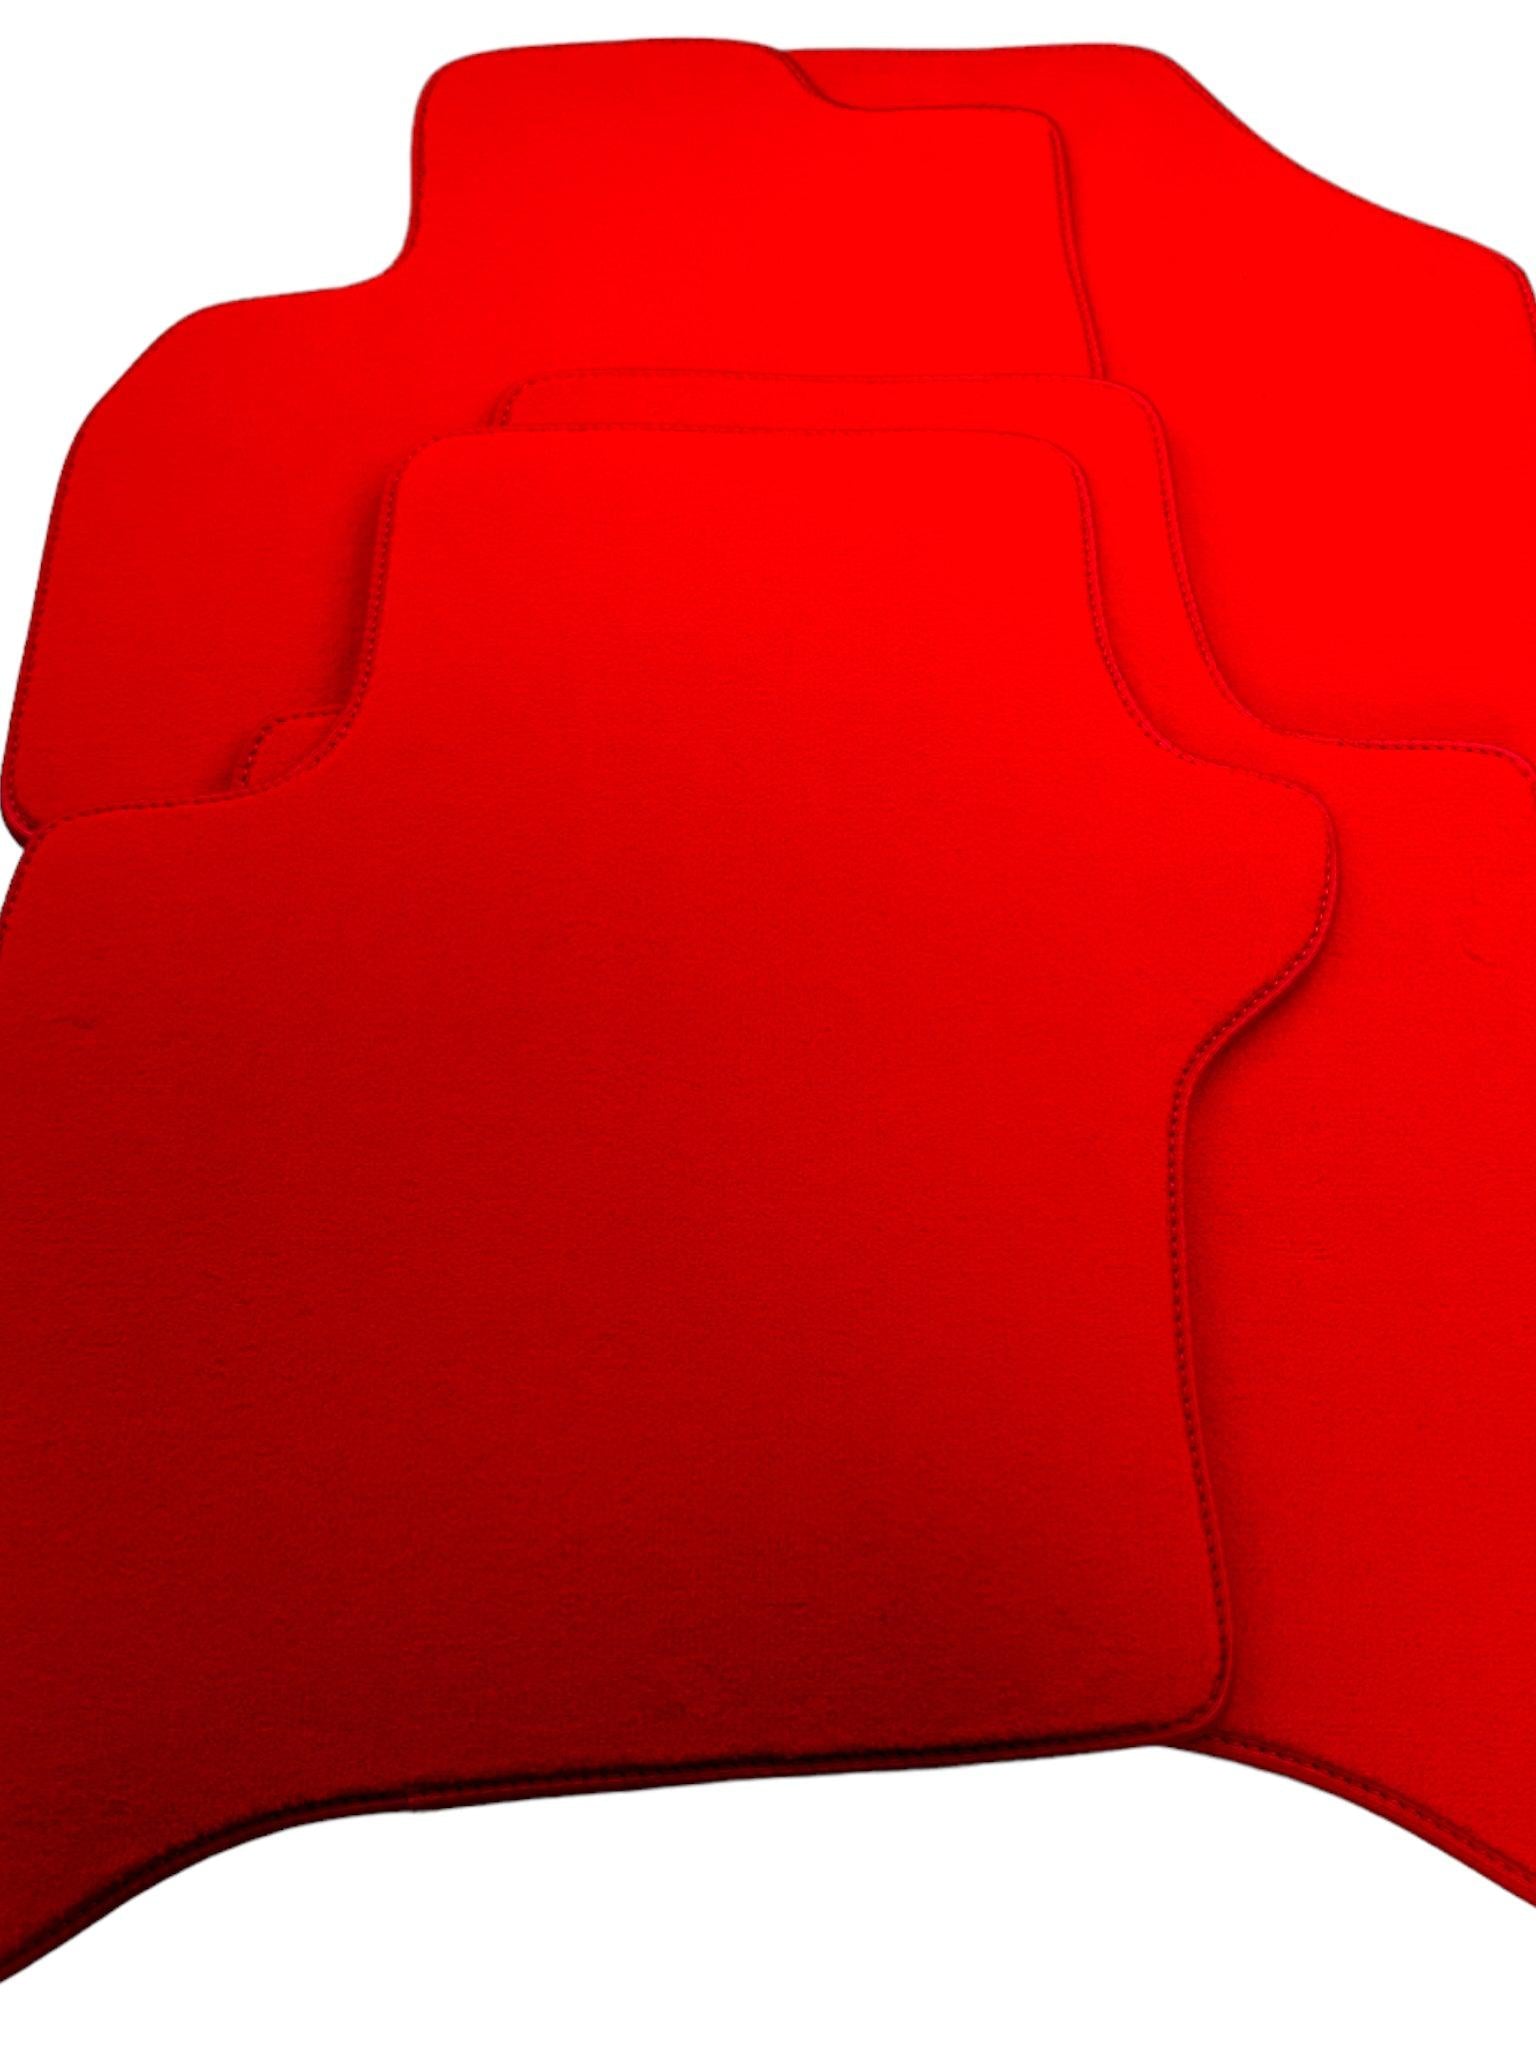 Red Floor Mats For Honda City (2009-2013) - AutoWin